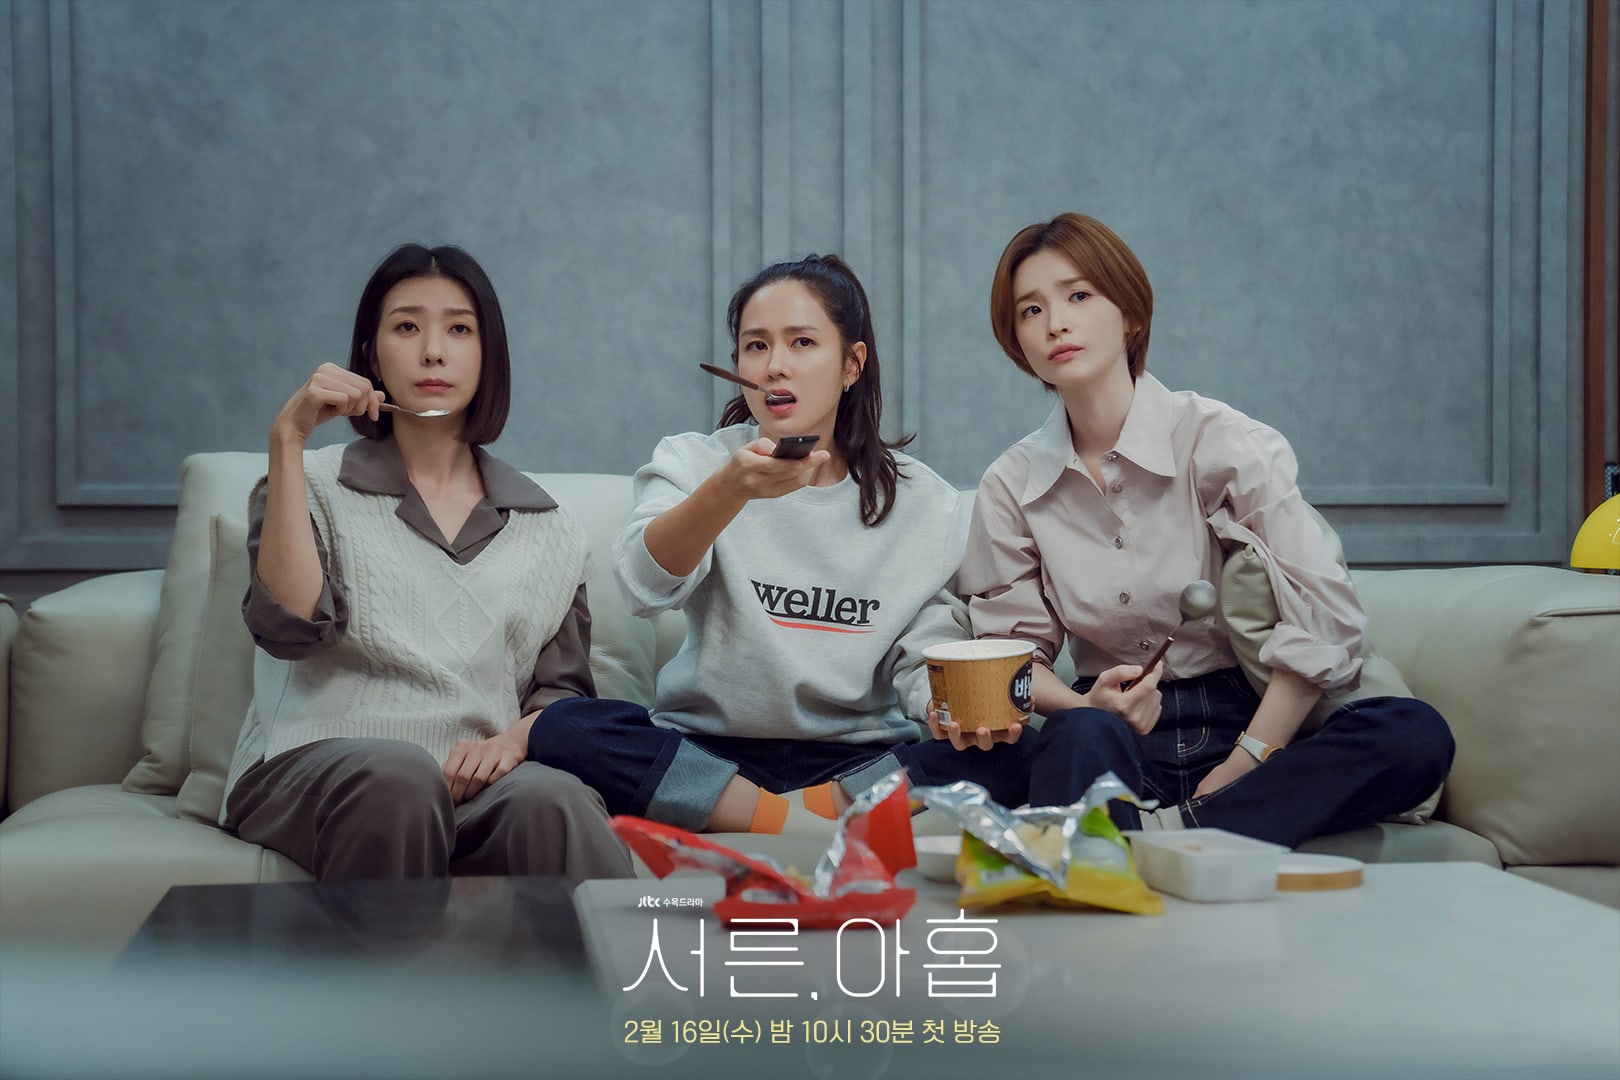 phim 39 Son ye Jin Kim Ji Hyun Jeon Mi Do 01 - 39: Phim tâm lý về cuộc đời người phụ nữ trước ngưỡng tuổi 40